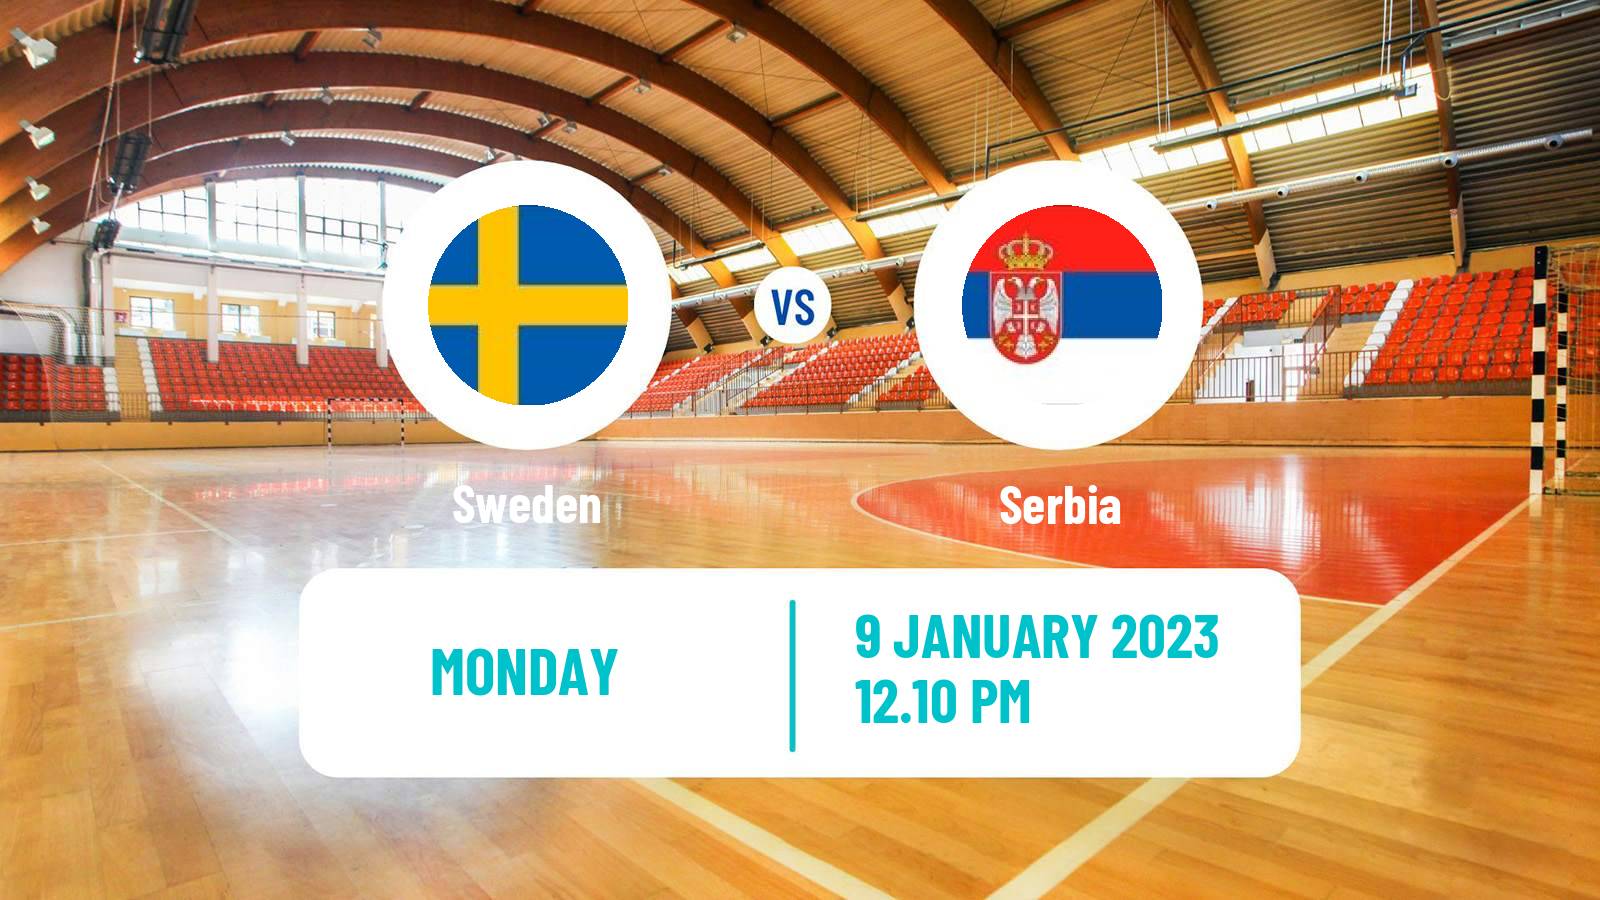 Handball Friendly International Handball Sweden - Serbia